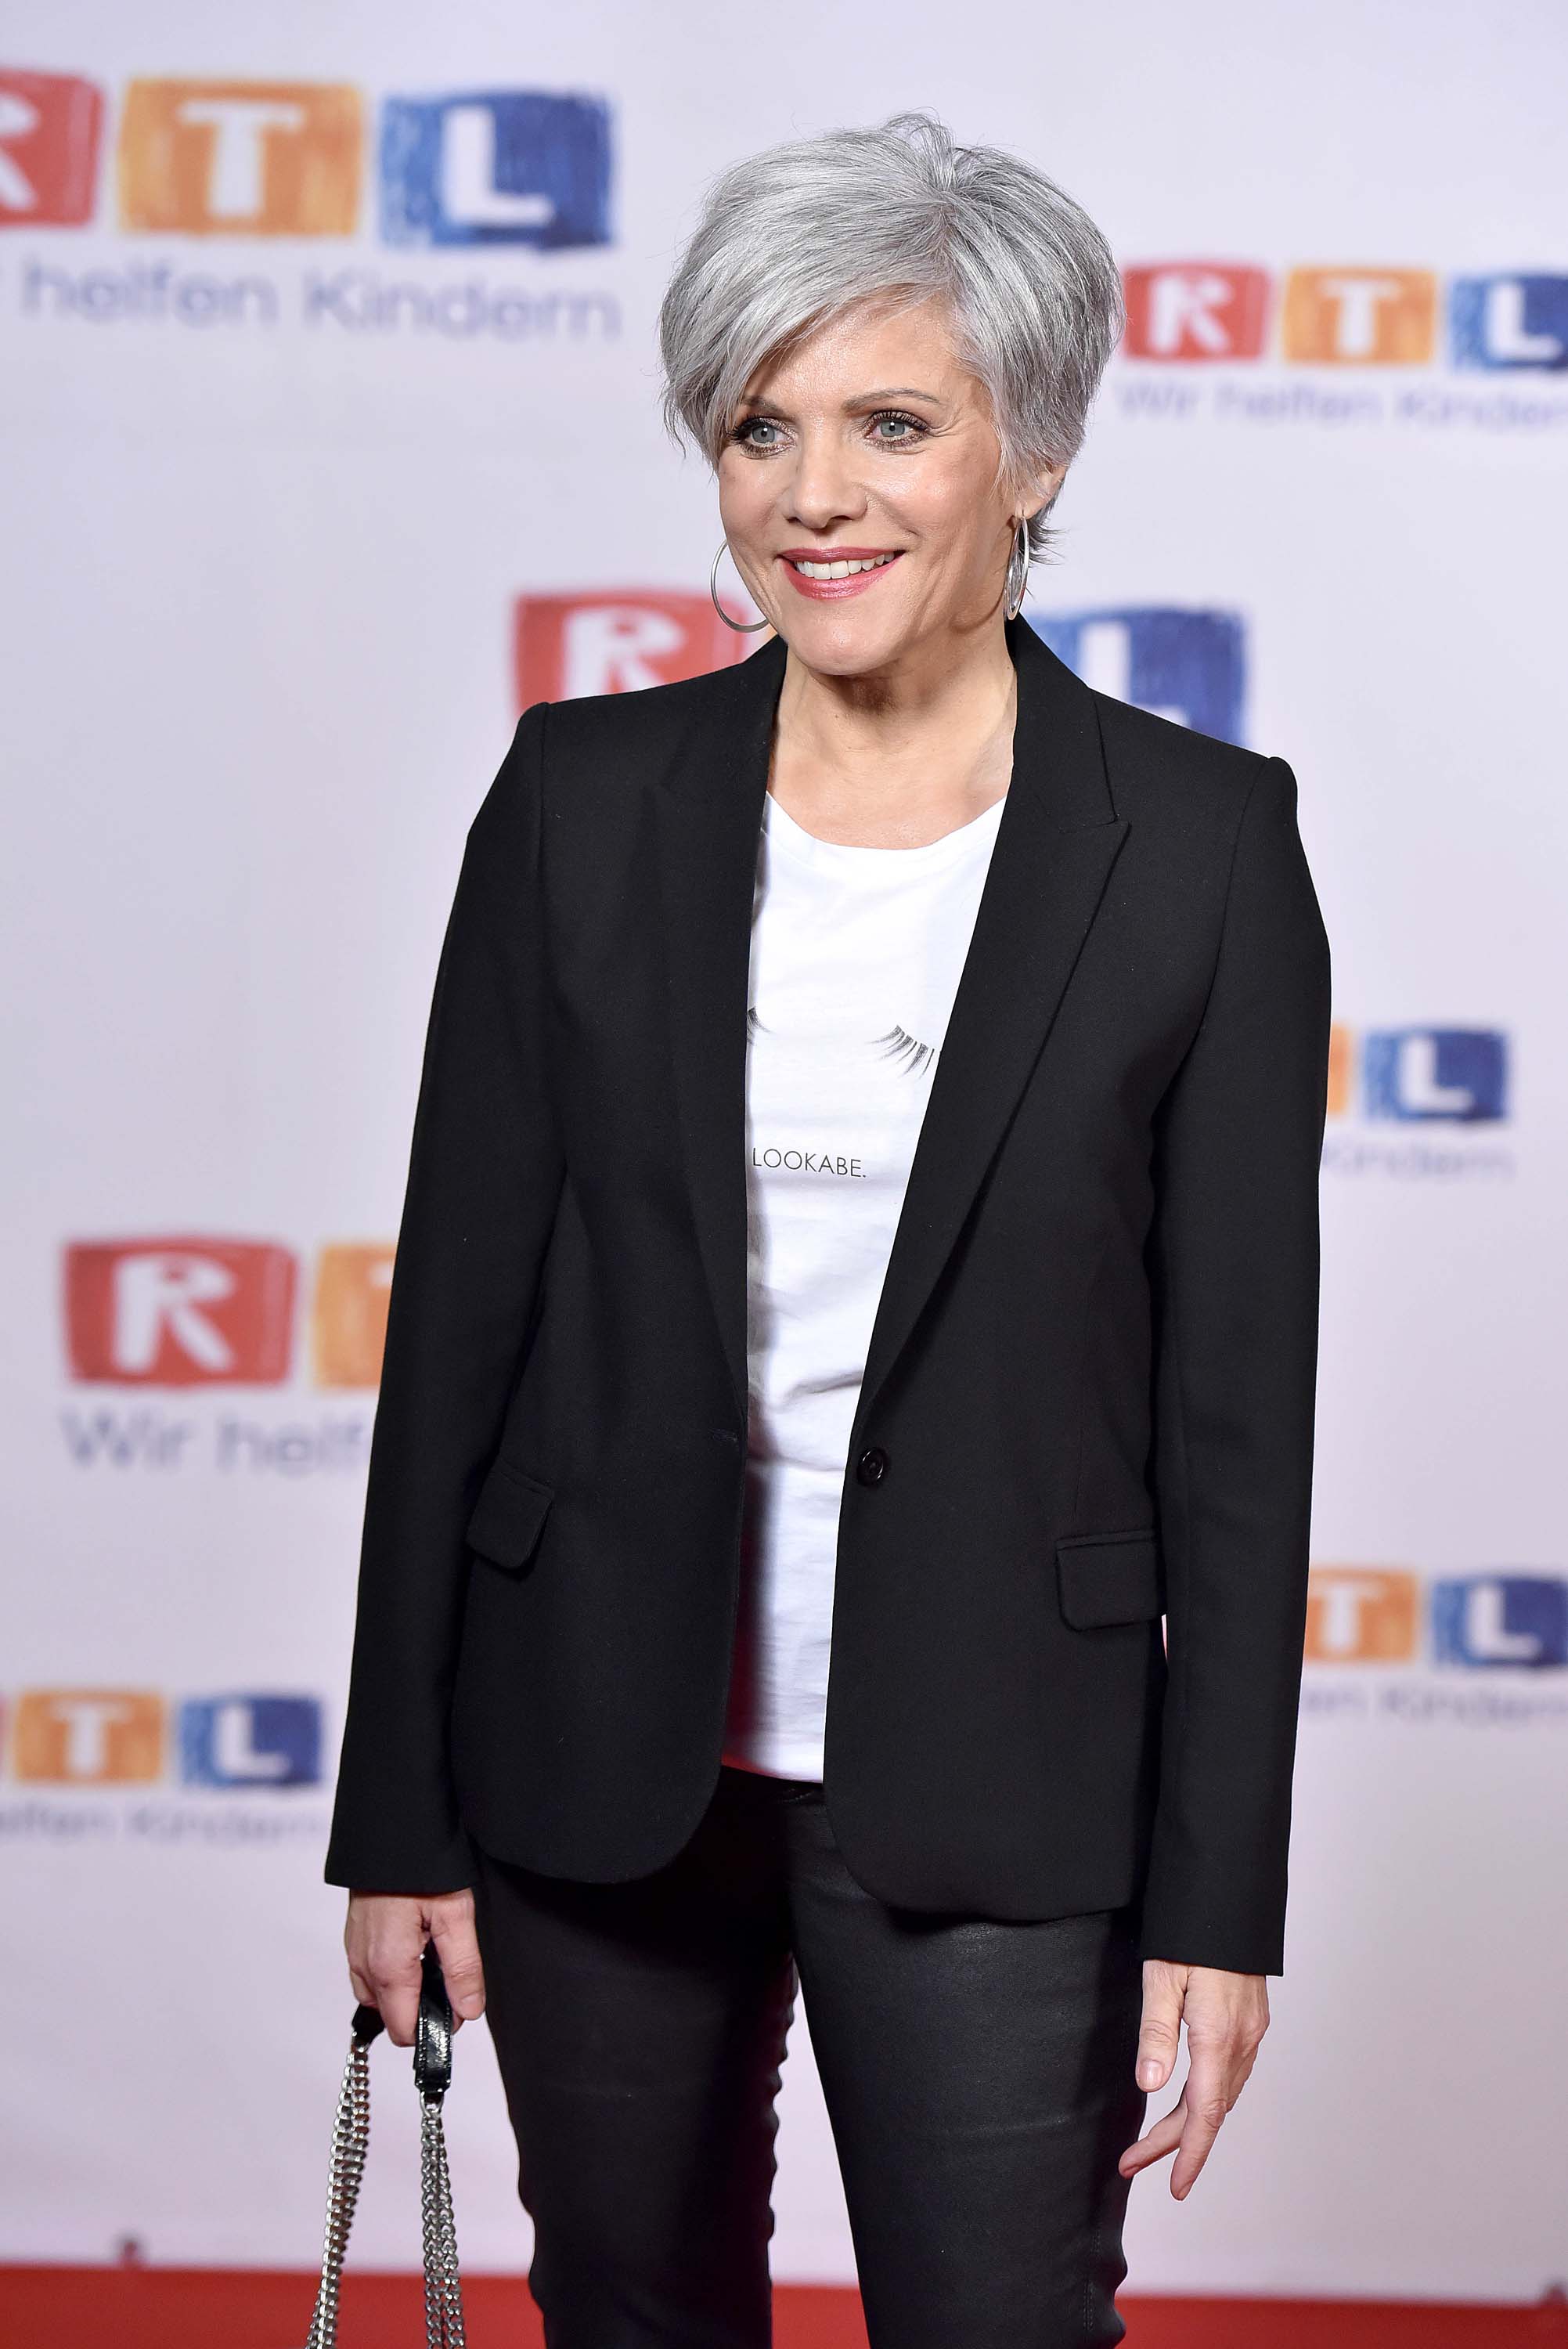 Birgit Schrowange attends RTL Spendenmarathon 2017